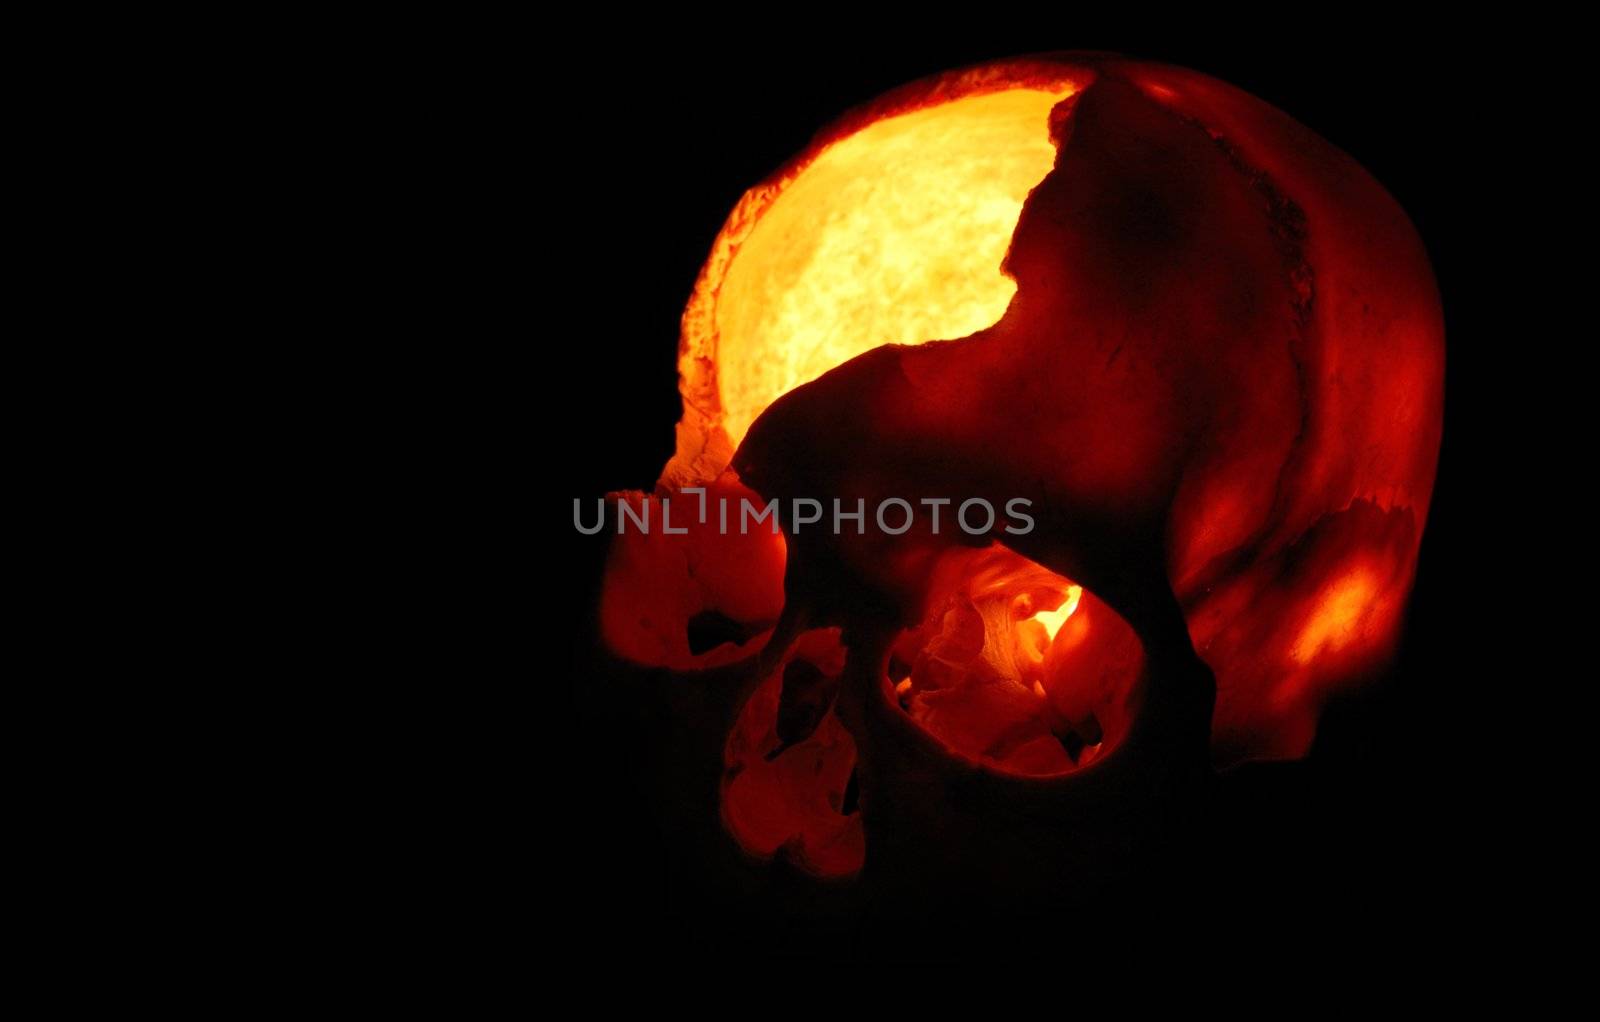 Burning skull - Old broken skull against black background with inner flame